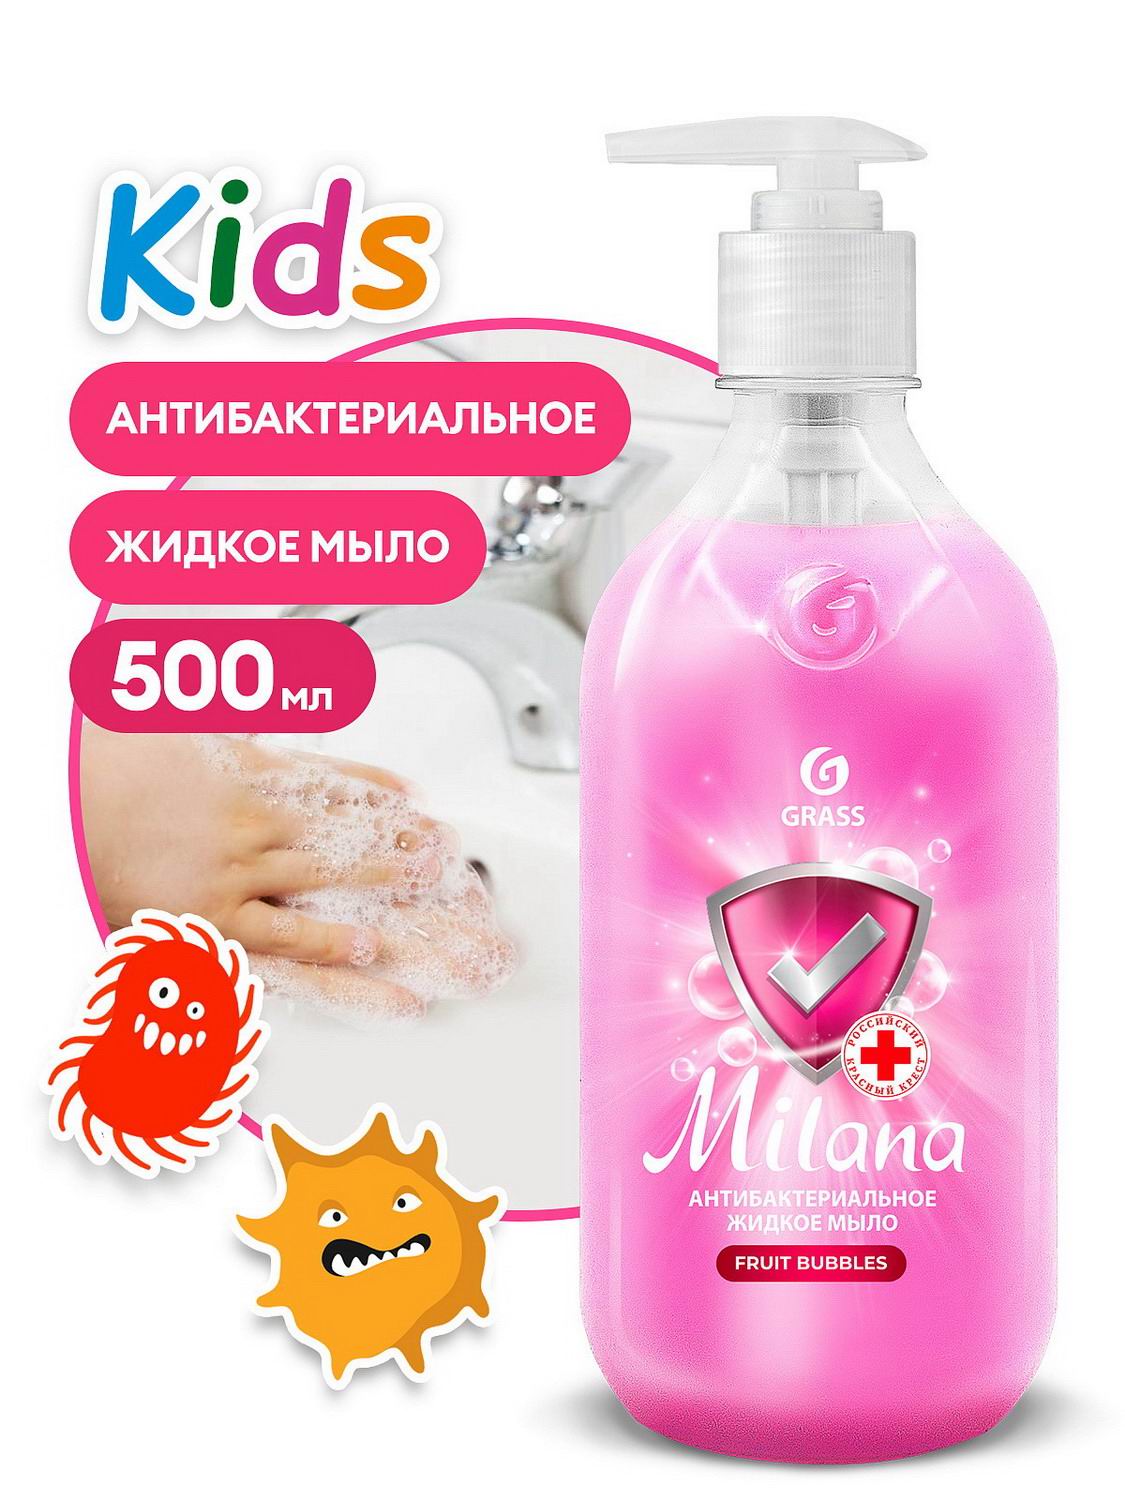 Жидкое мыло Grass Milana антибактериальное Fruit bubbles Kids 500мл